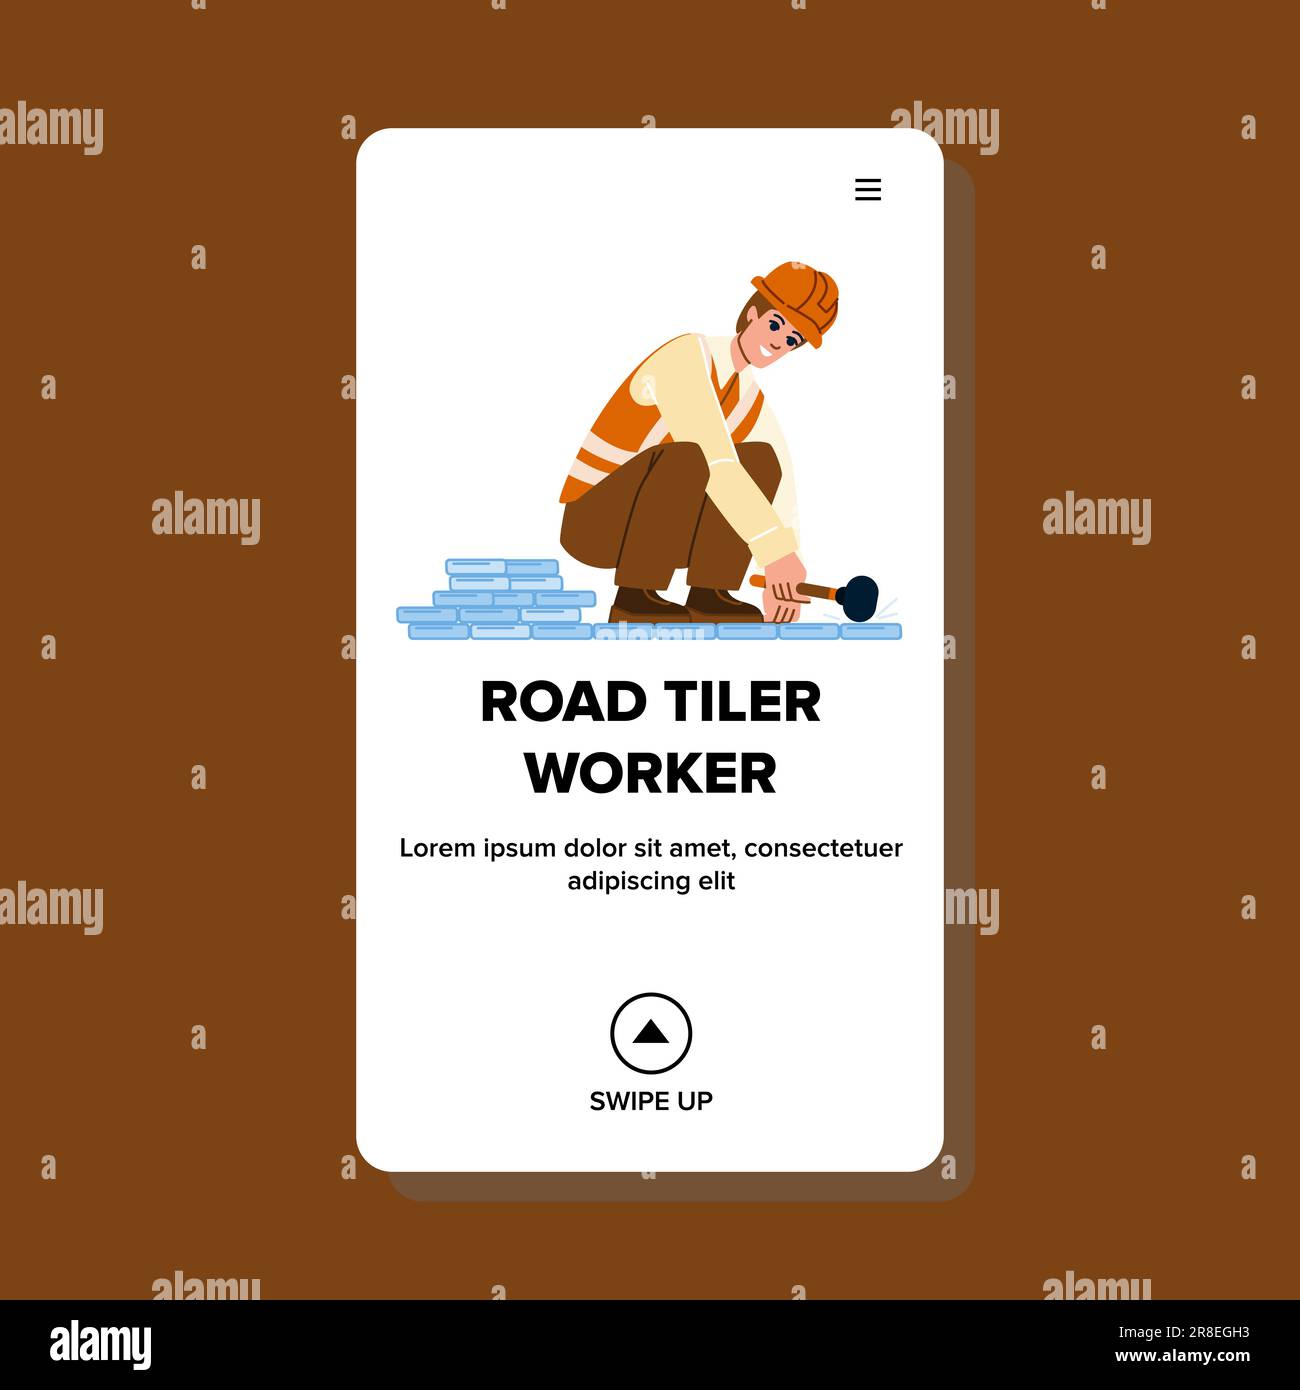 road tiler worker vector Stock Vector